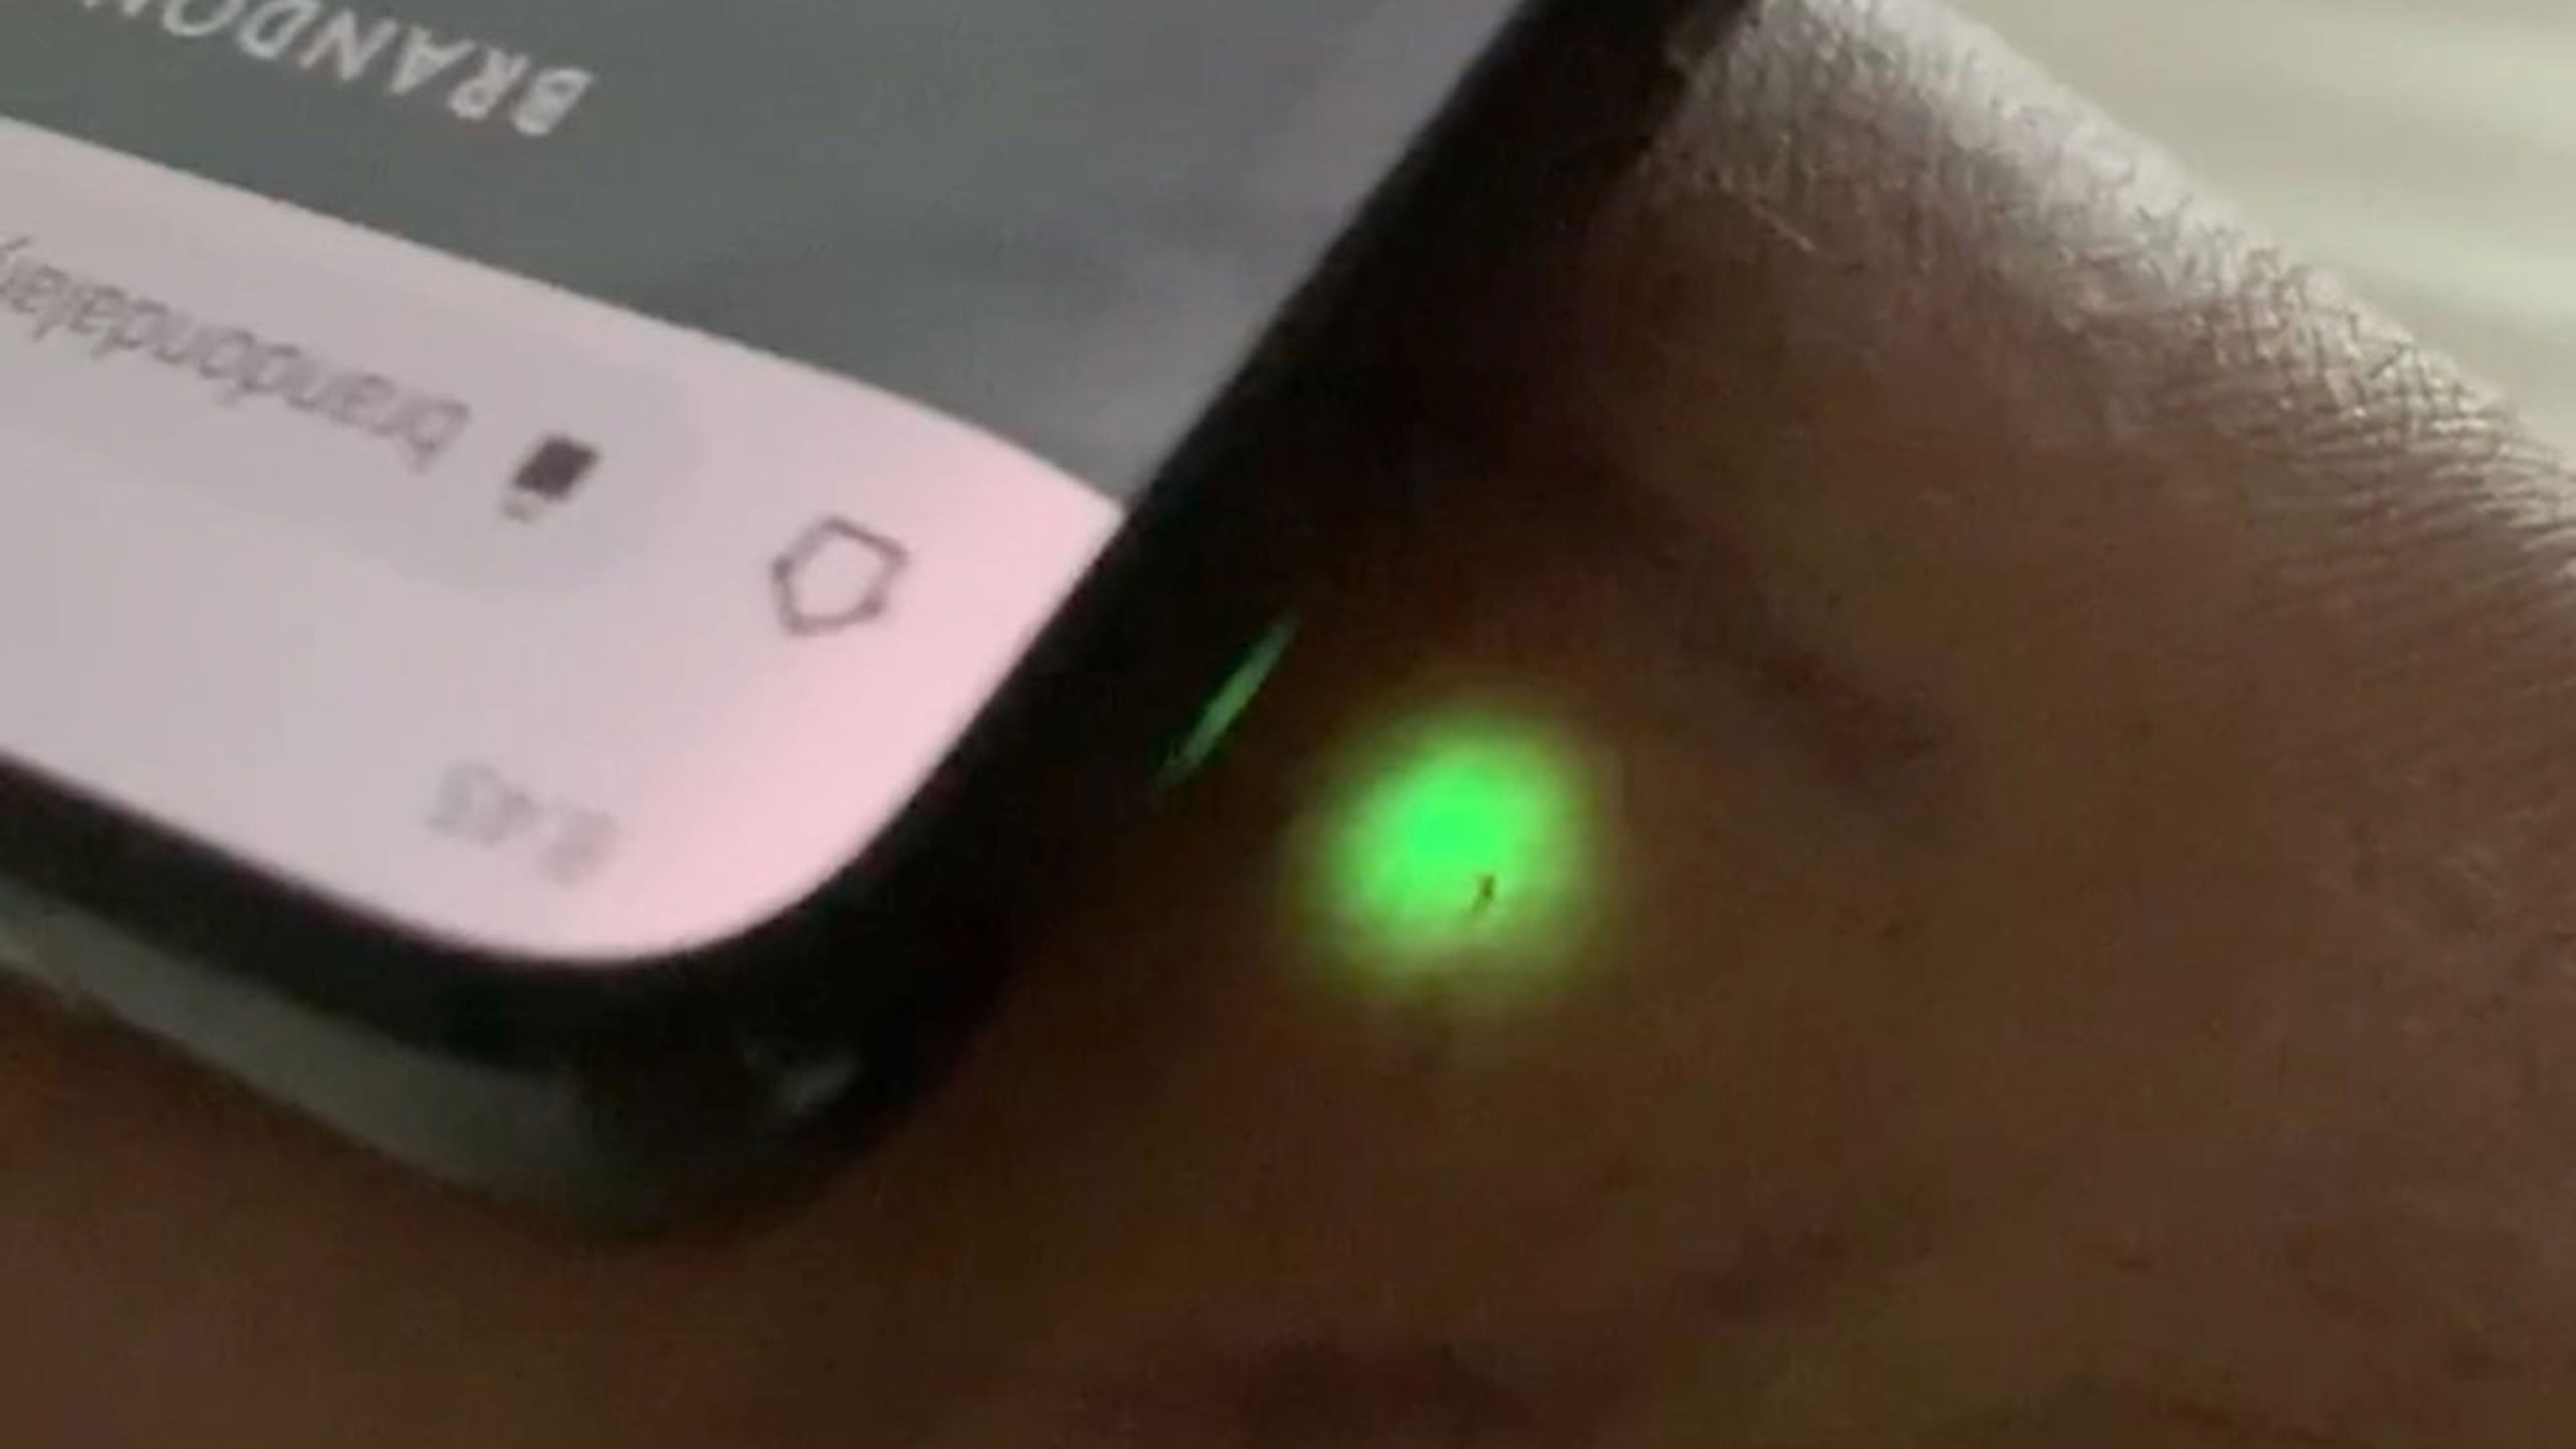 Este propietario de un Tesla se implanta un chip en su mano para desbloquear su coche y no depender del móvil